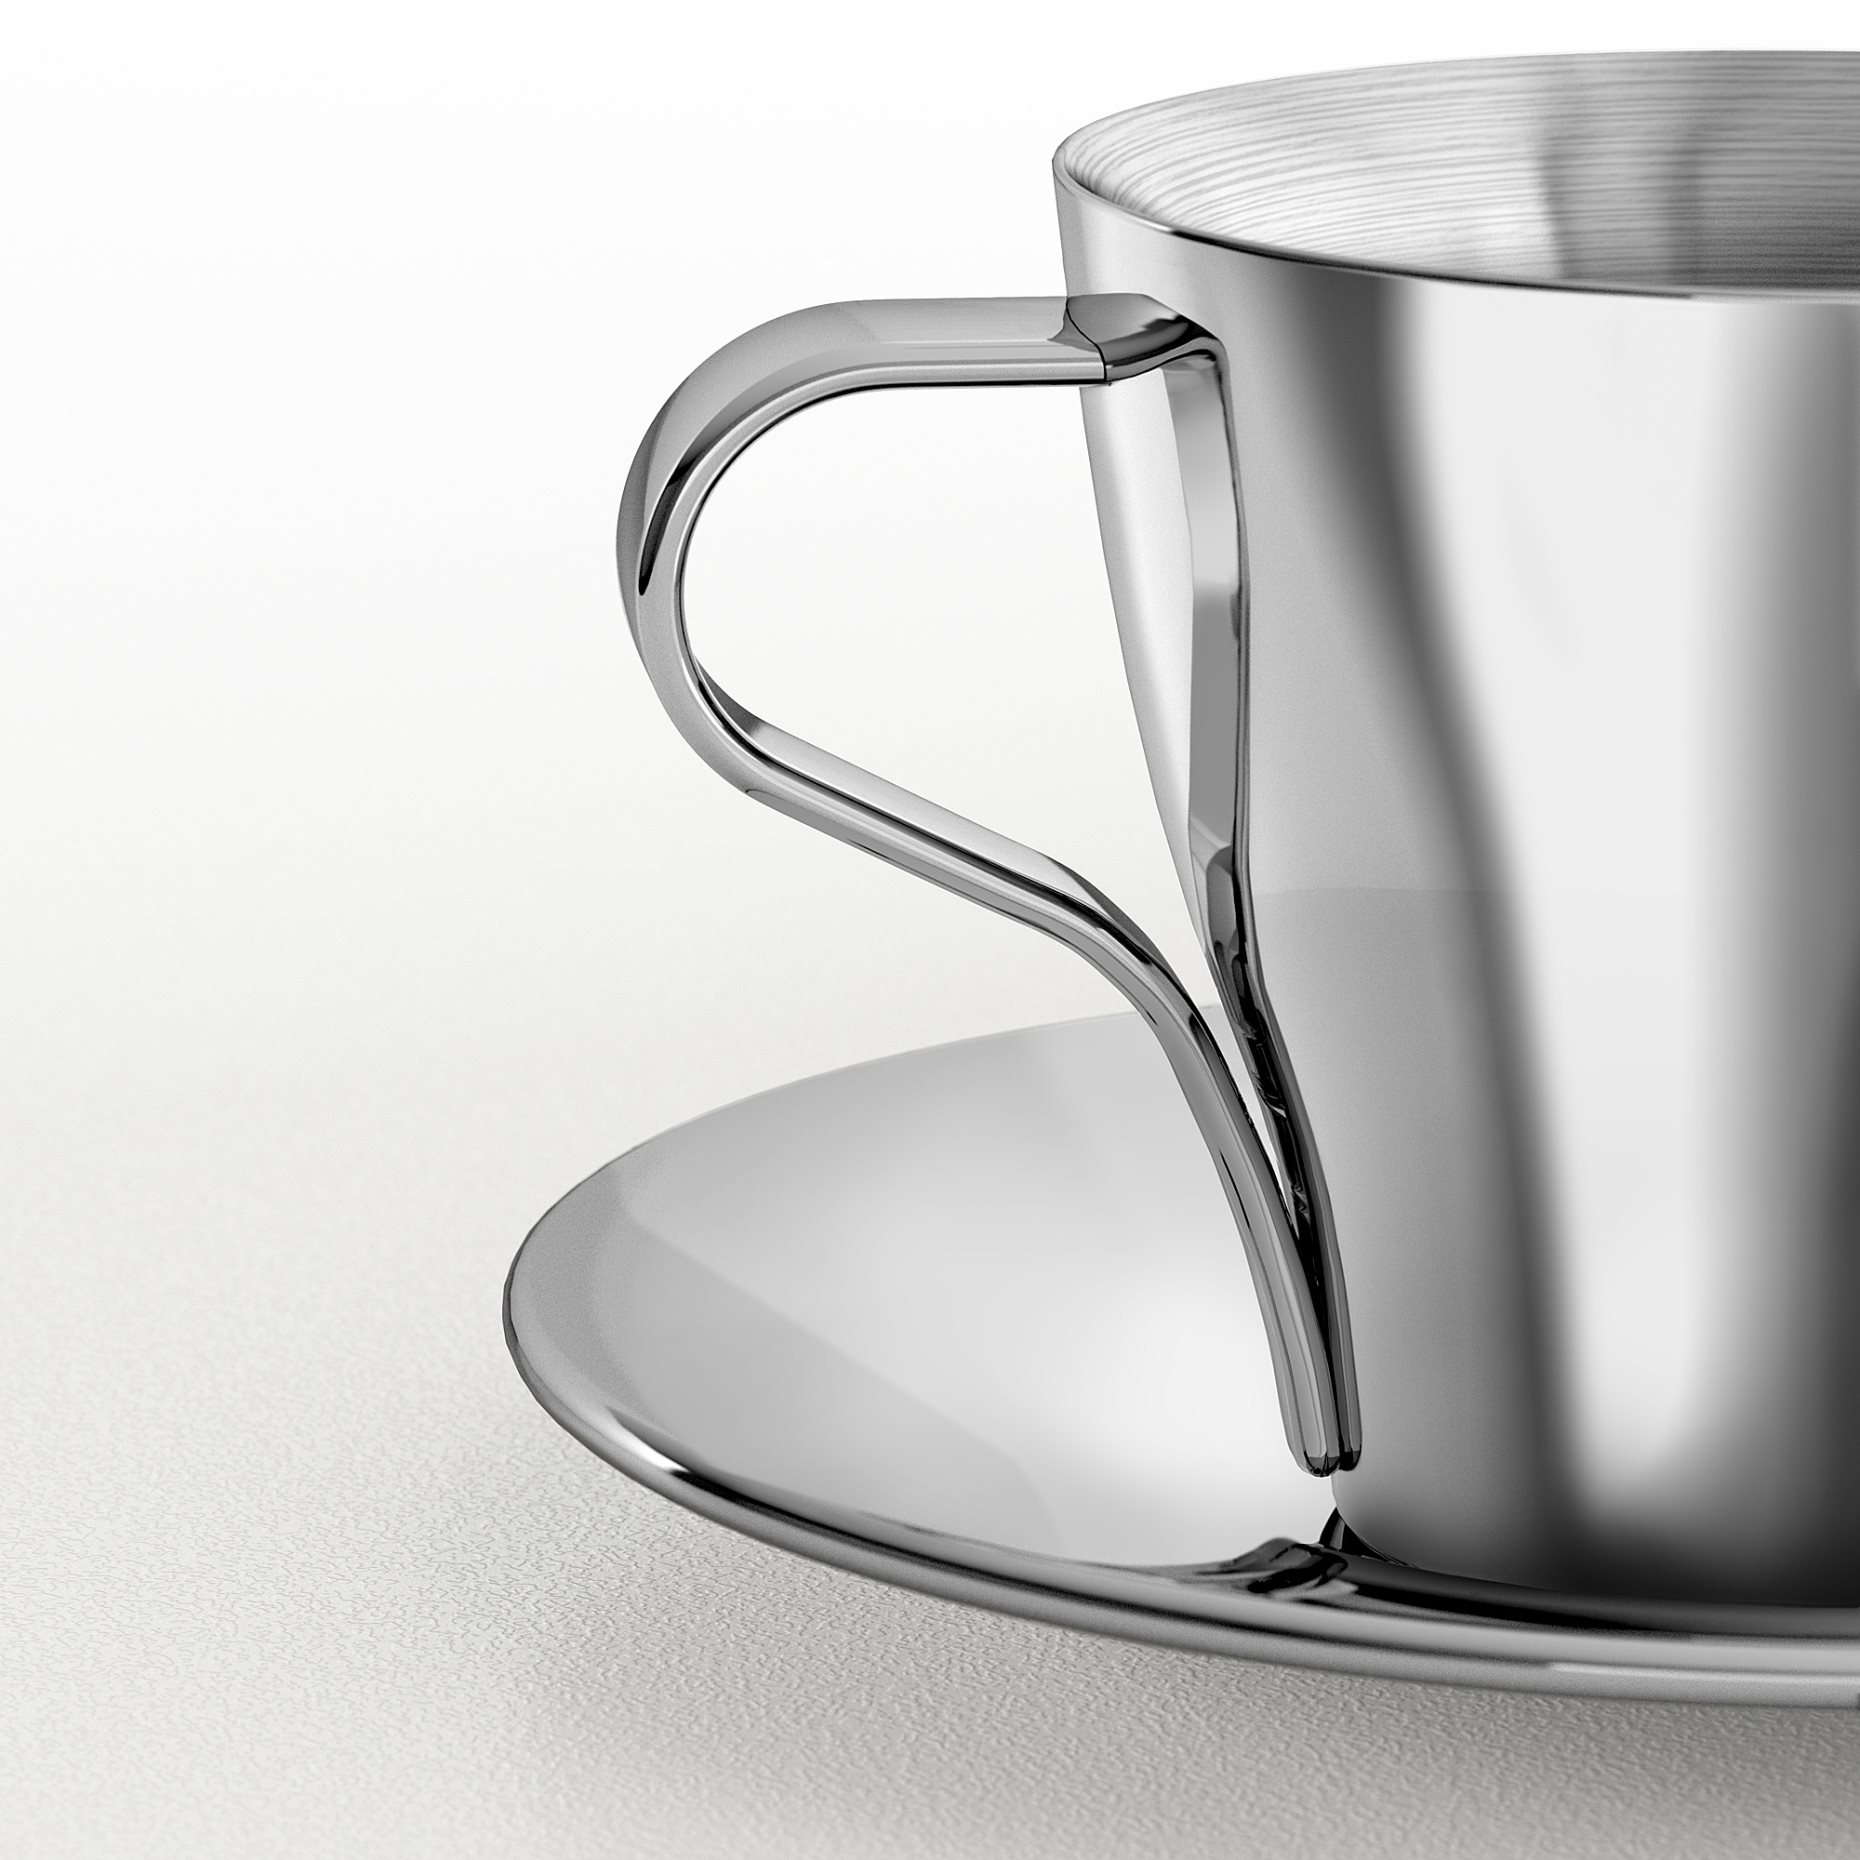 KALASET, espresso cup and saucer, 6 cl, 501.496.64